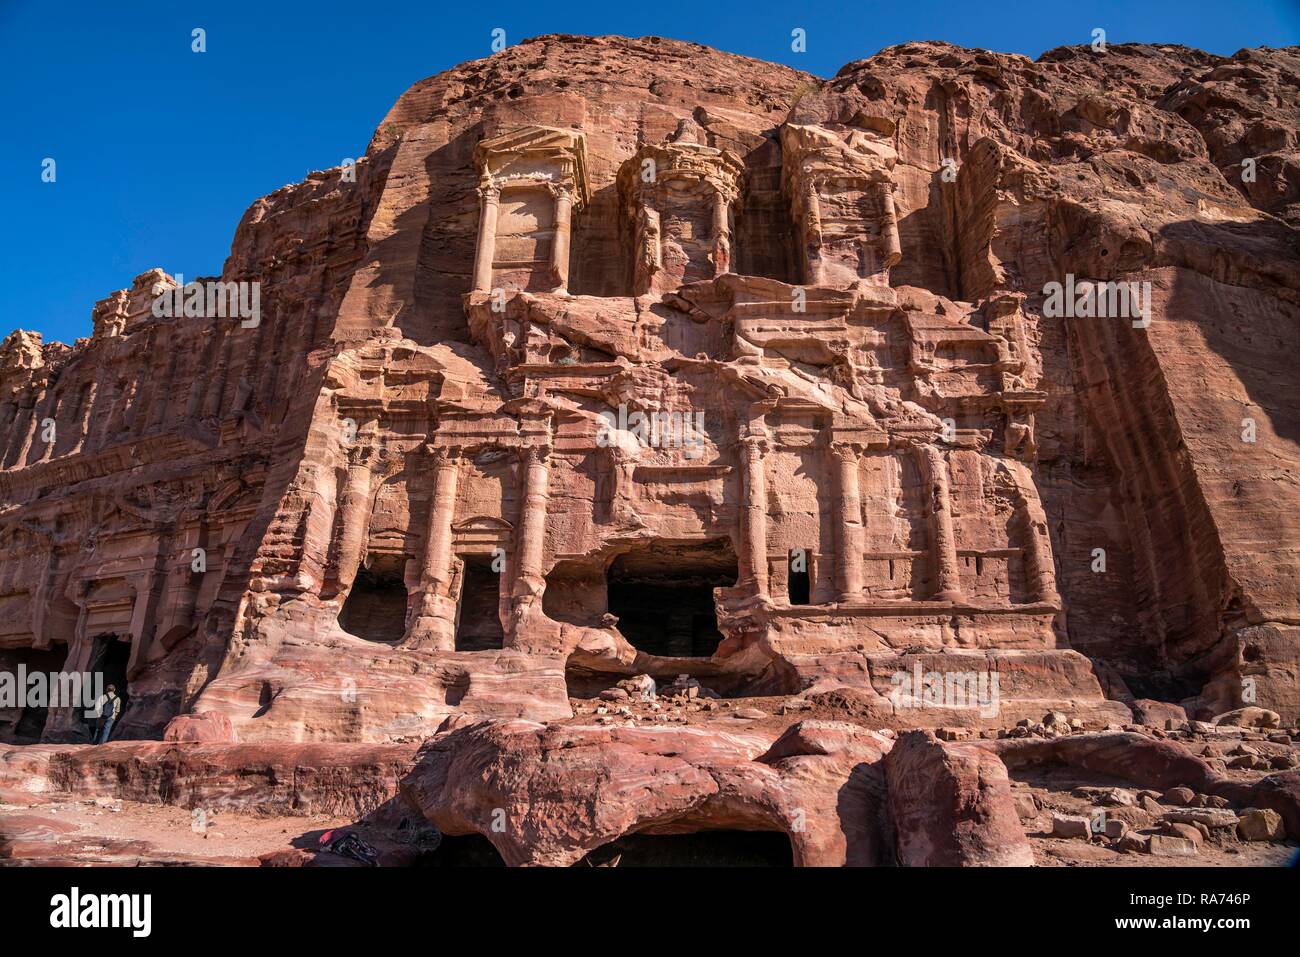 Corinthian tomb, tombs of the royal wall, Petra, Jordan Stock Photo